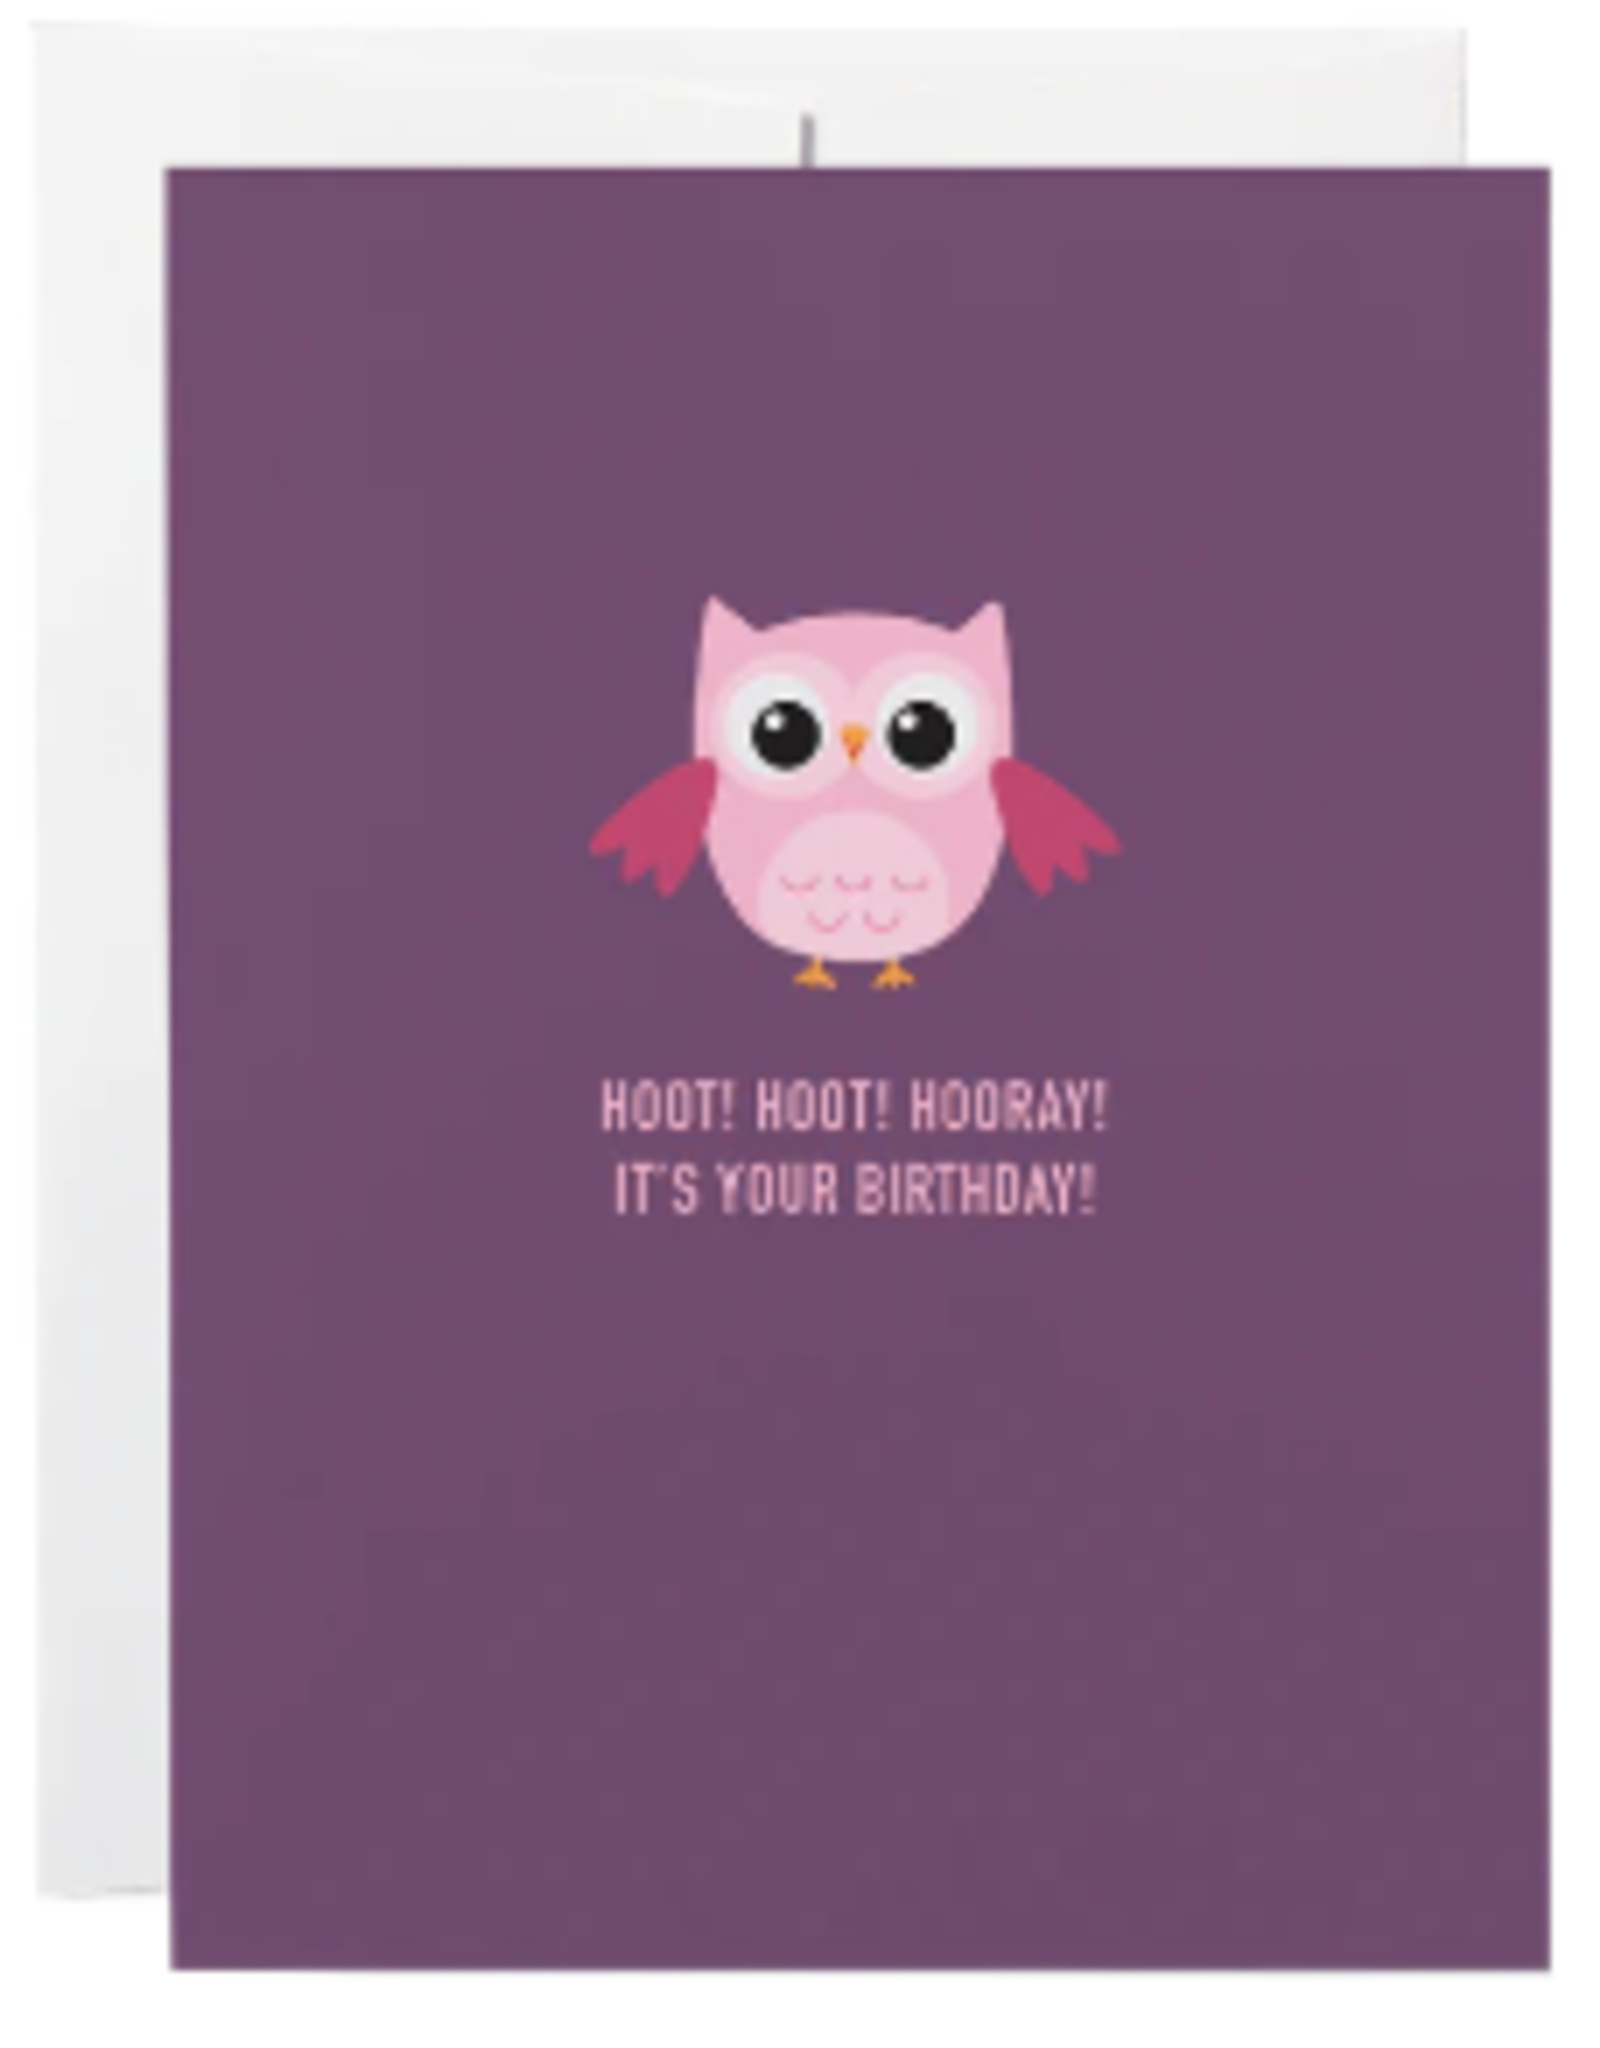 Classy Cards CC Card Owl